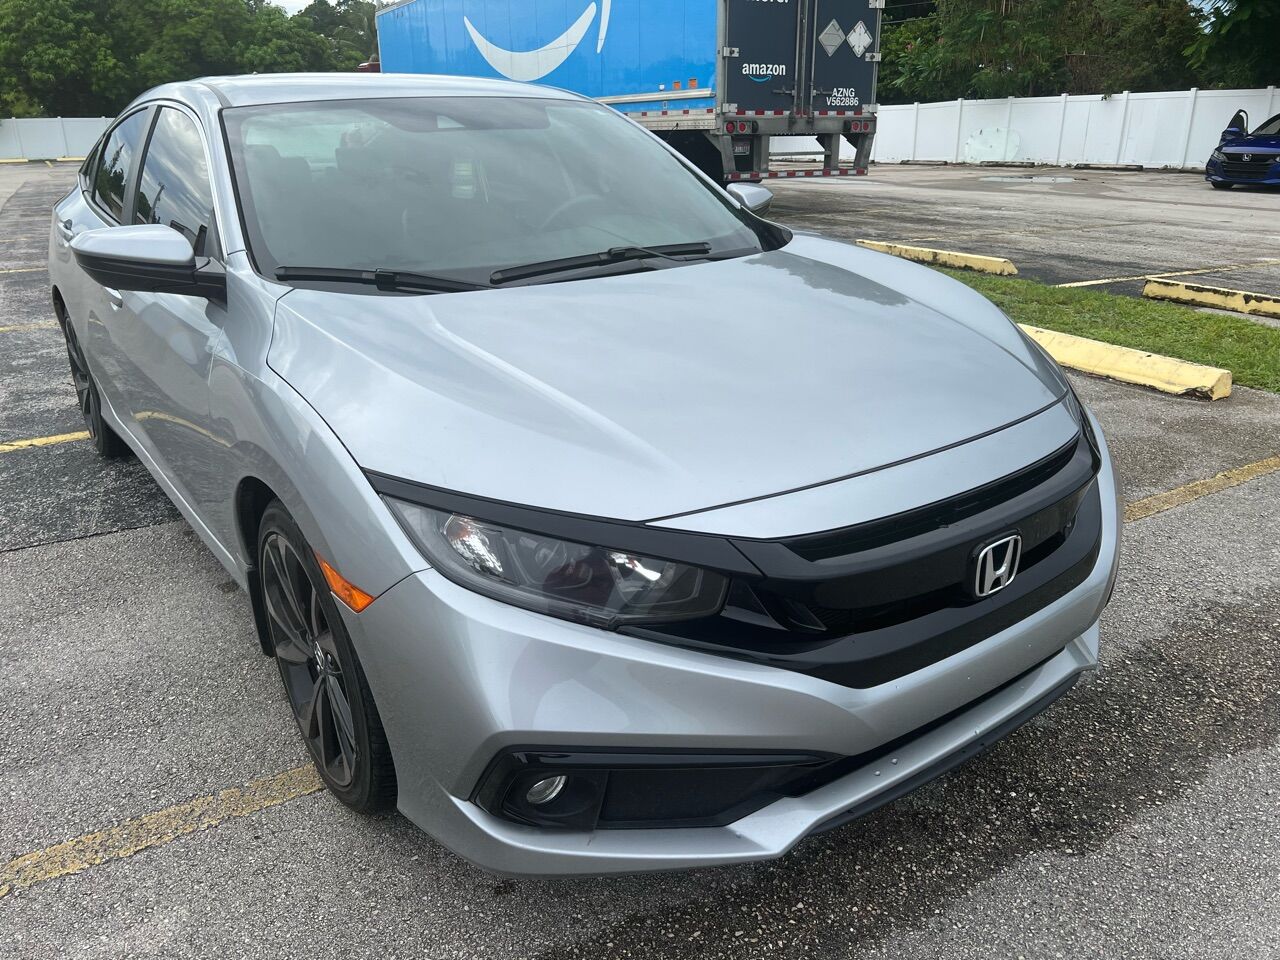 2020 HONDA Civic Sedan - $20,999